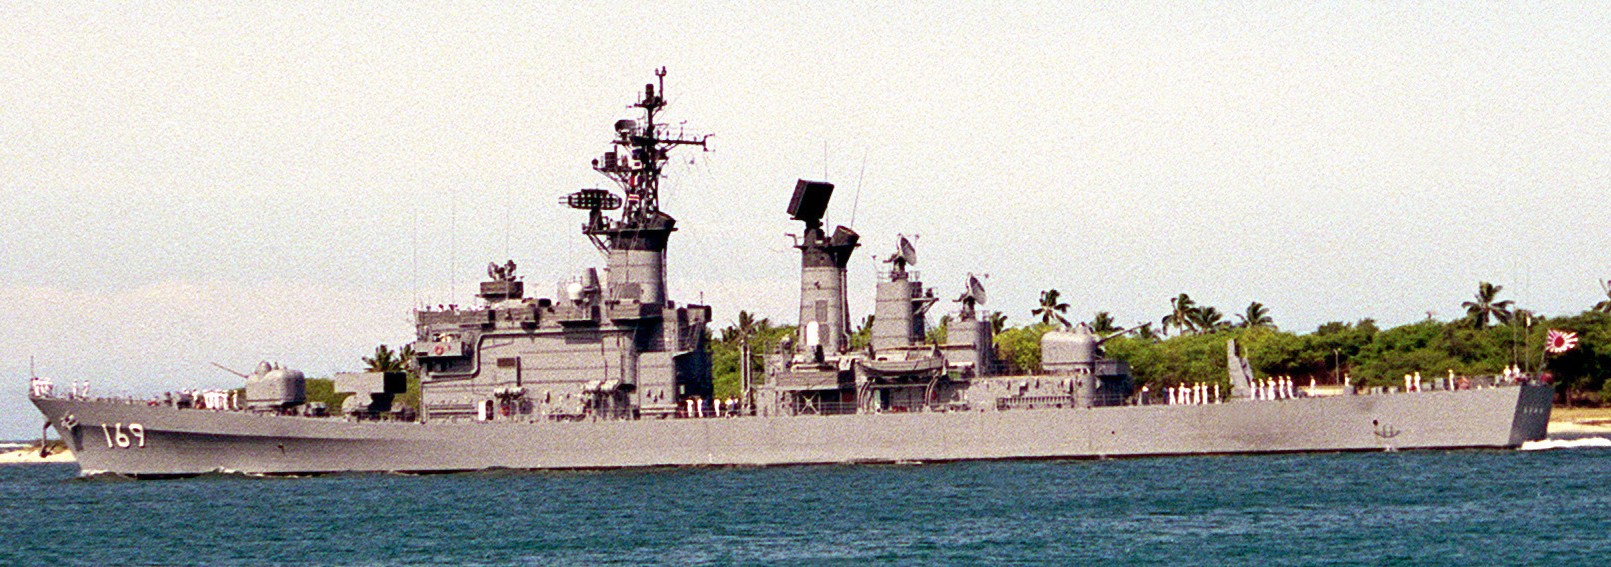 ddg-169 jds asakaze guided missile destroyer japan maritime self defense force jmsdf navy02